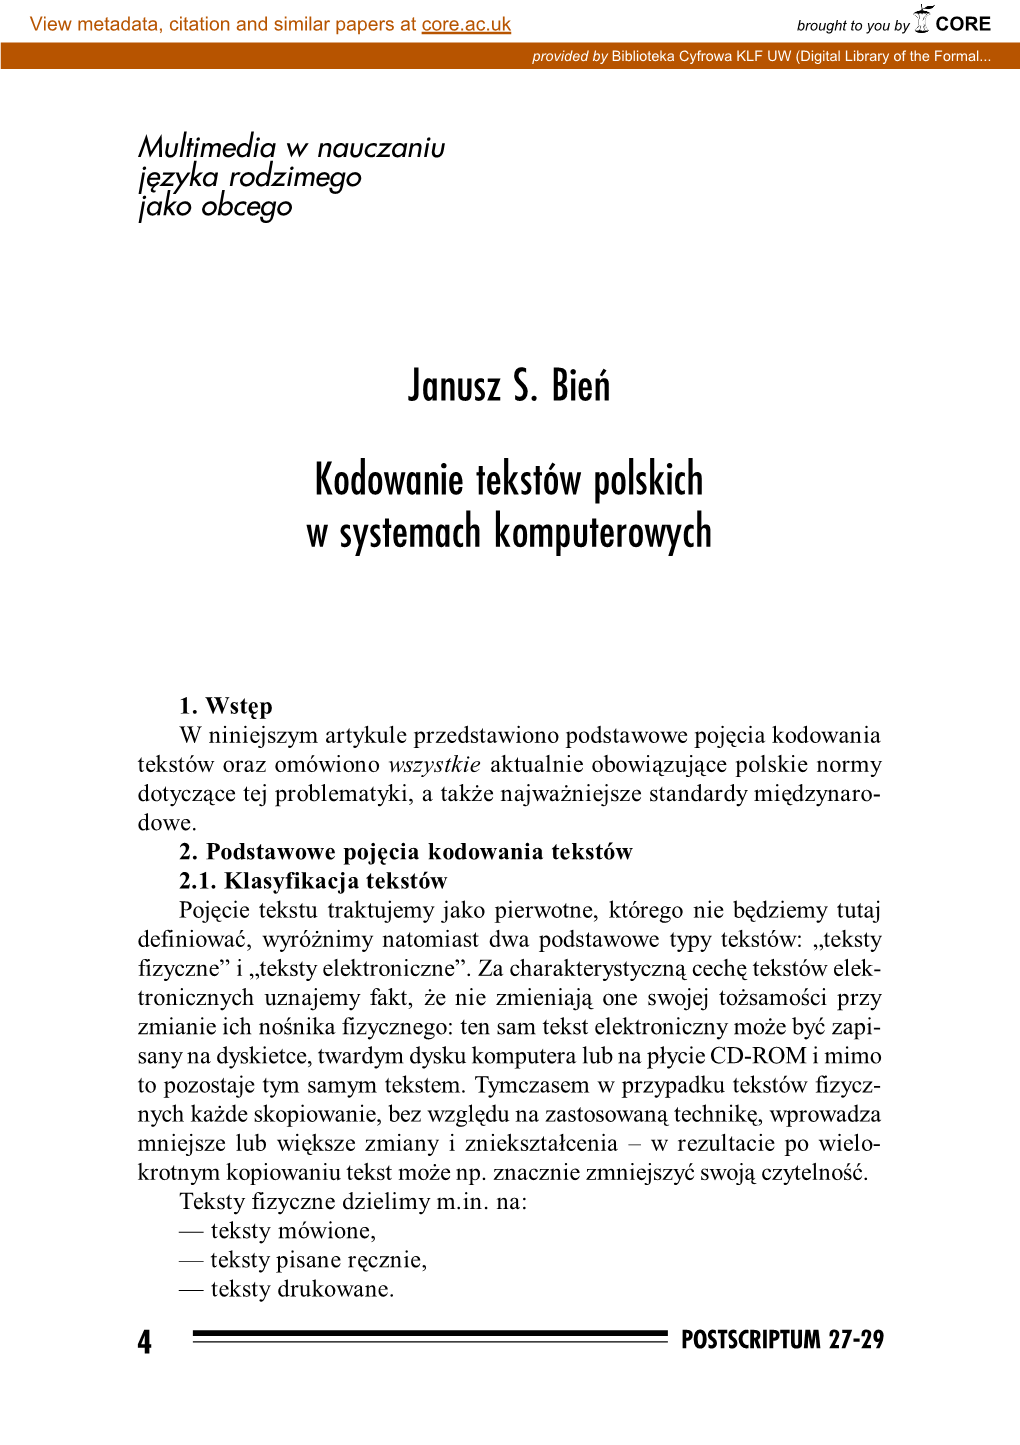 Janusz S. Bień Kodowanie Tekstów Polskich W Systemach Komputerowych